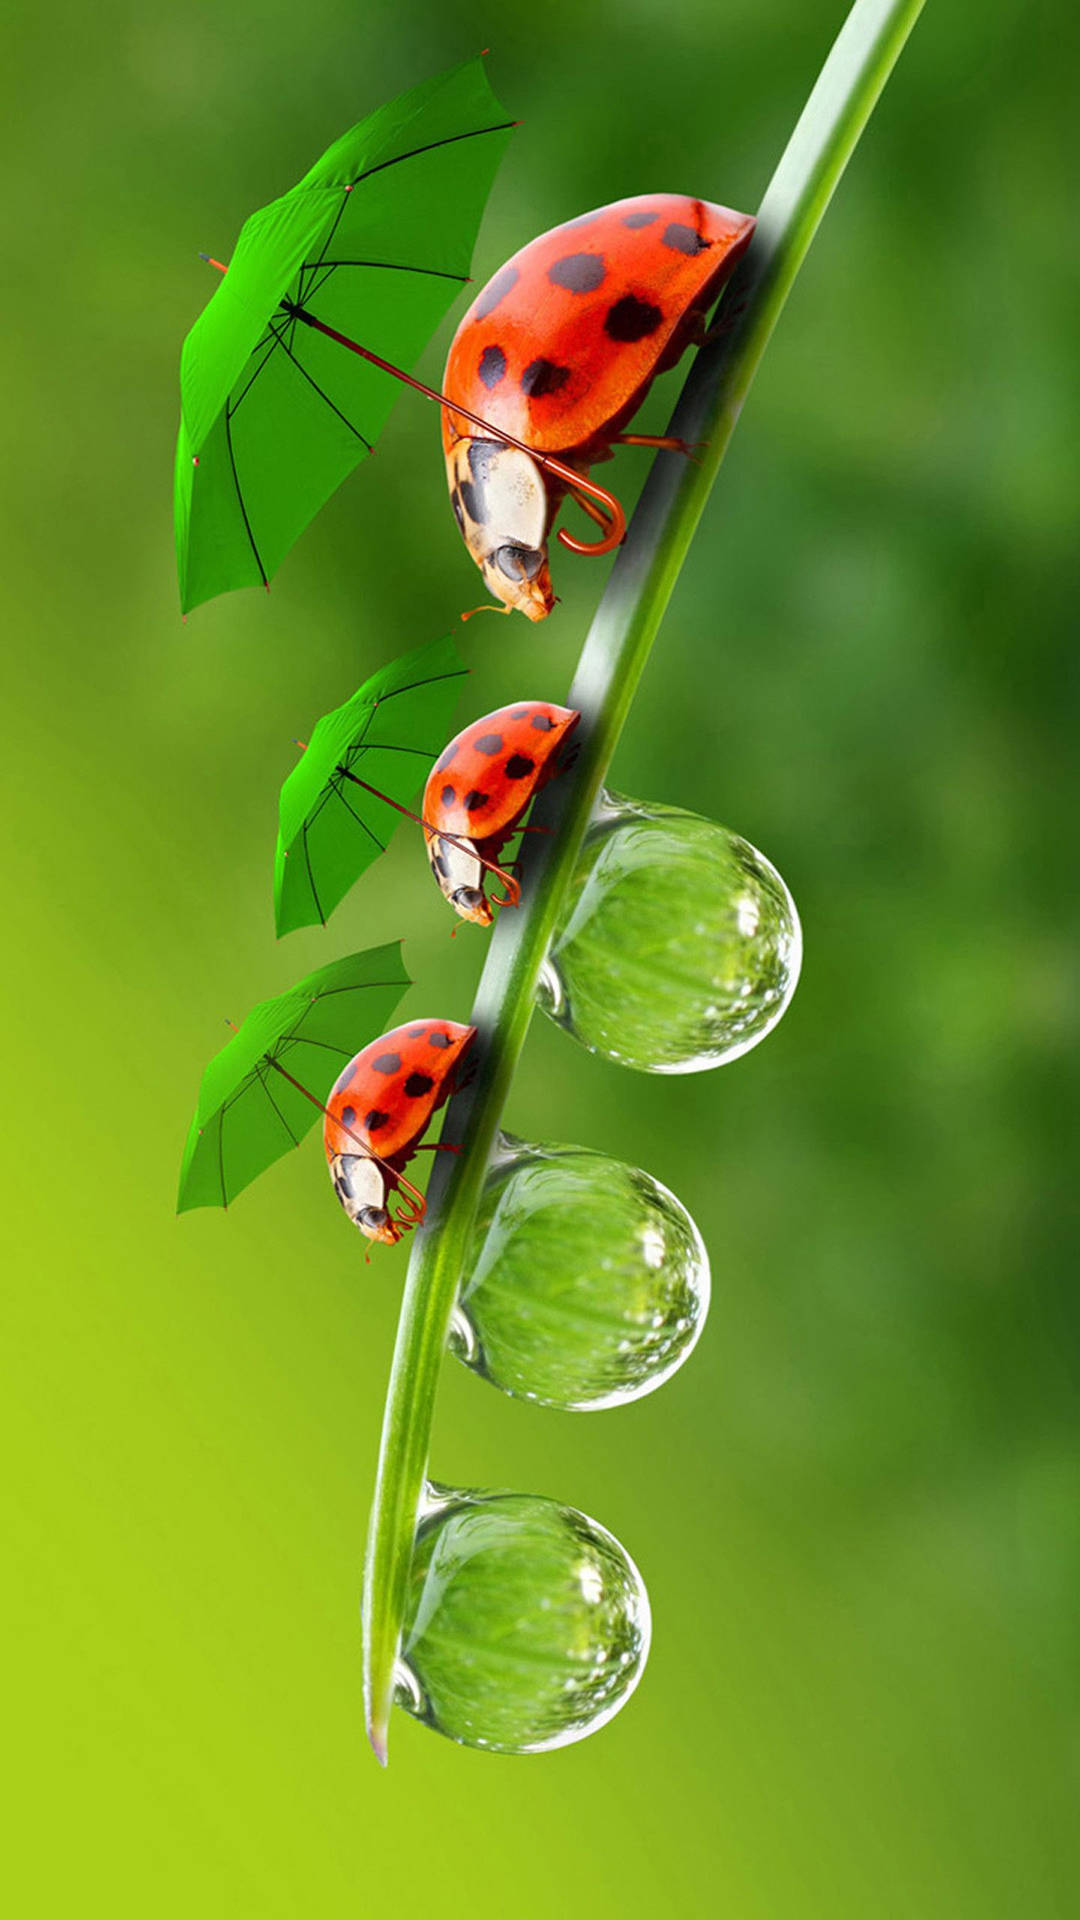 Ladybug Beetles With Green Umbrellas Background